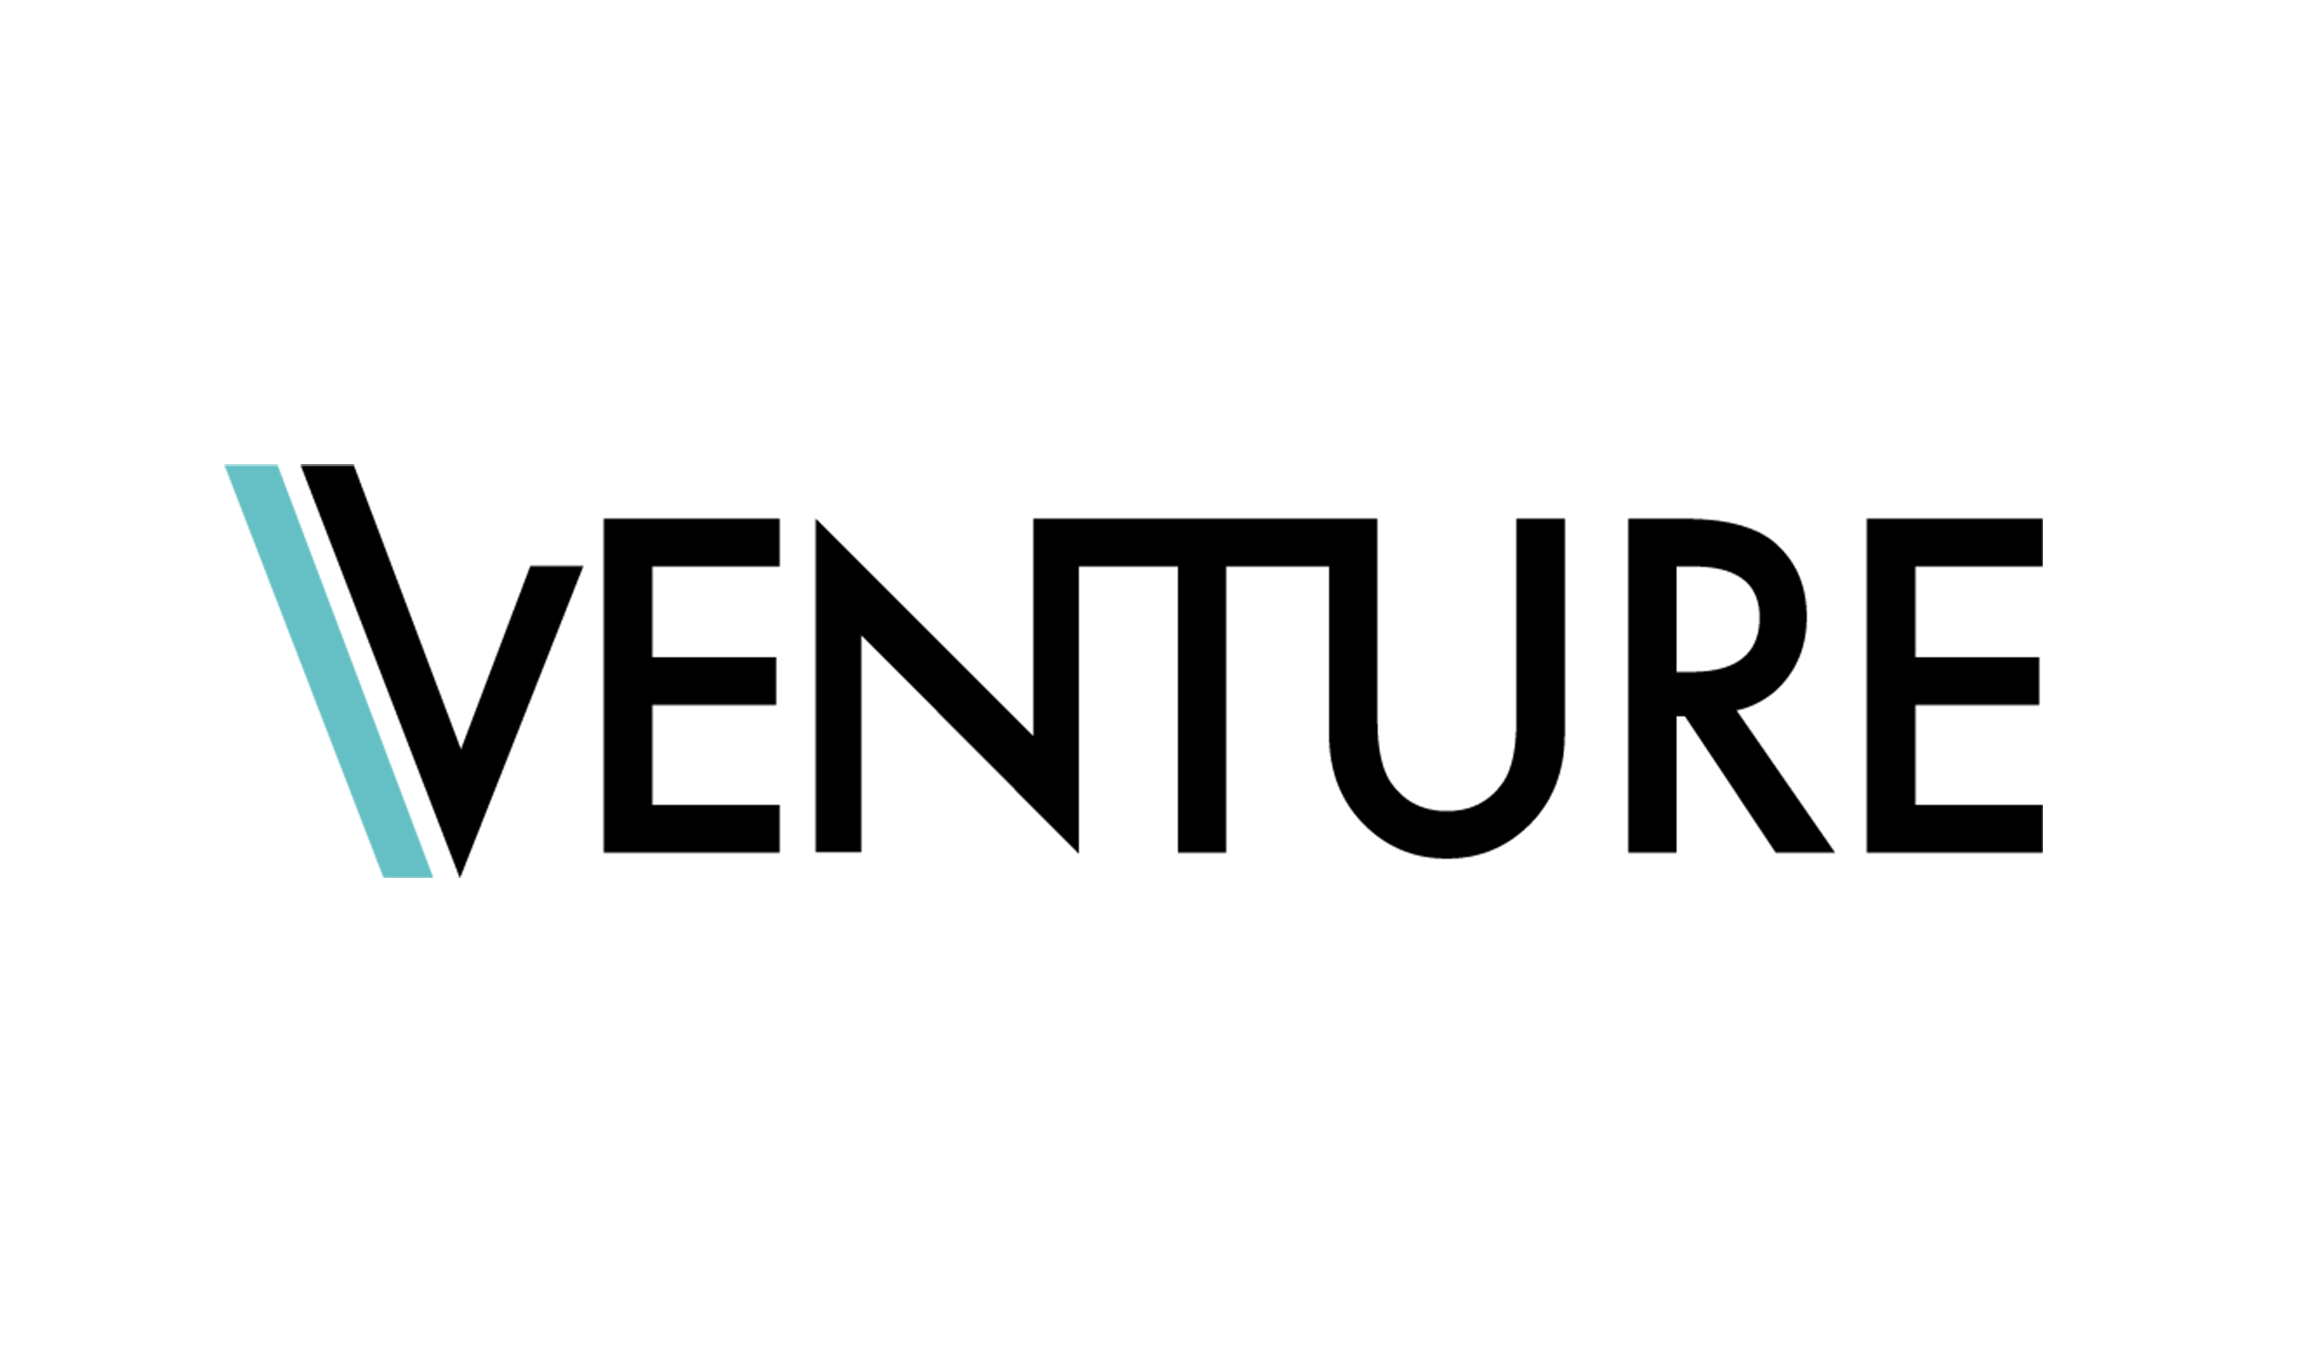 Venture logo